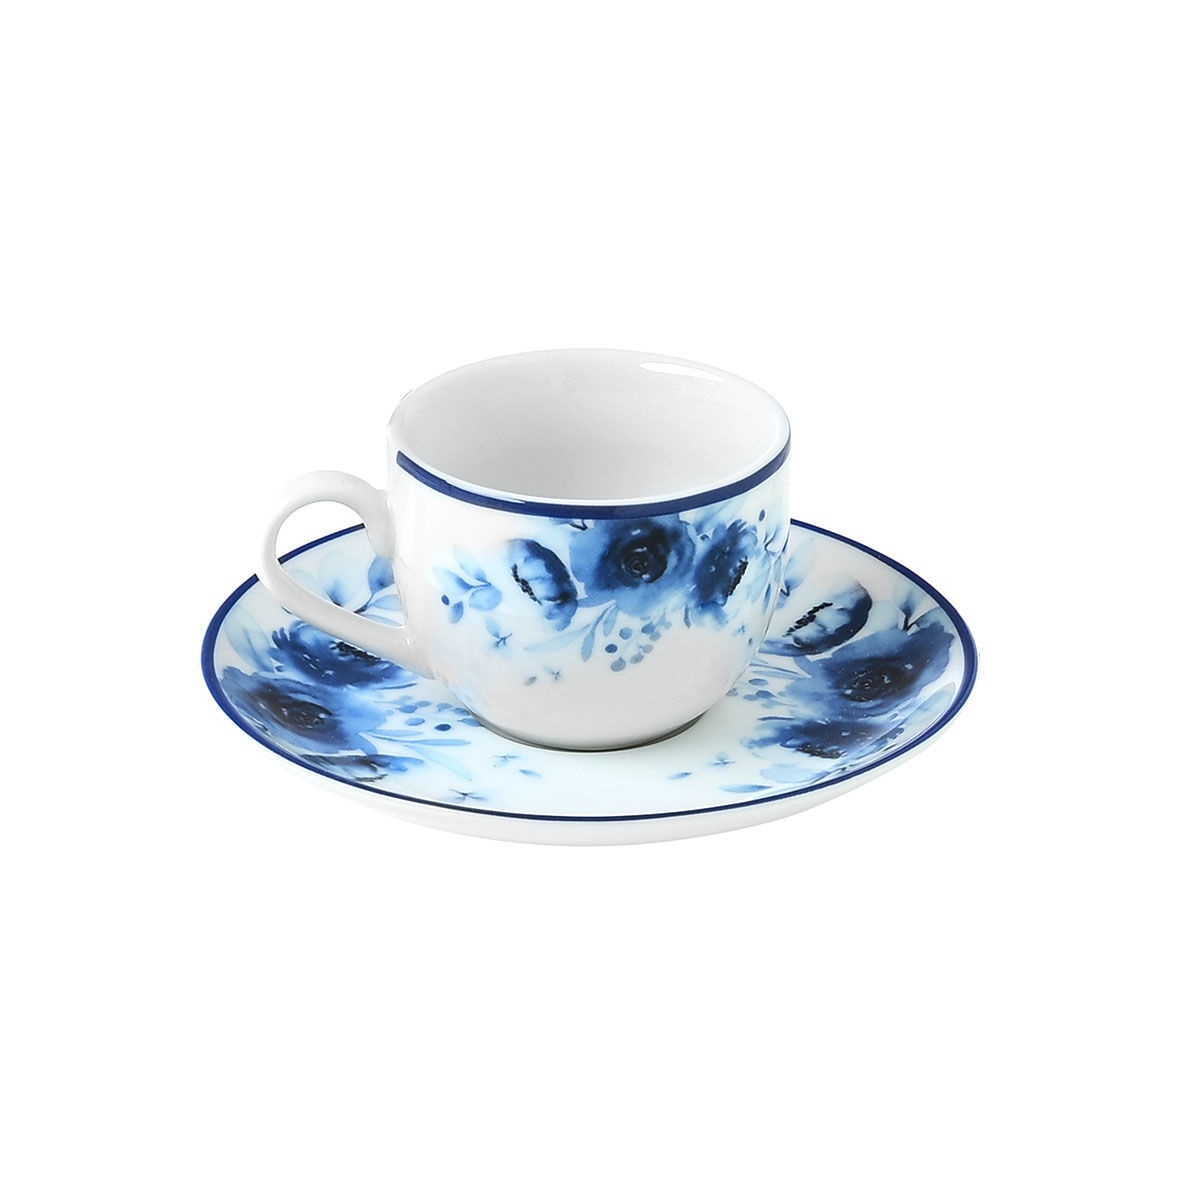 Φλυτζάνι Καφέ Πορσελάνης Ανάγλυφο Blue Rose Estia 100ml 07-16142 (Σετ 2 Τεμάχια) (Υλικό: Πορσελάνη, Χρώμα: Λευκό) - estia - 07-16142 182281